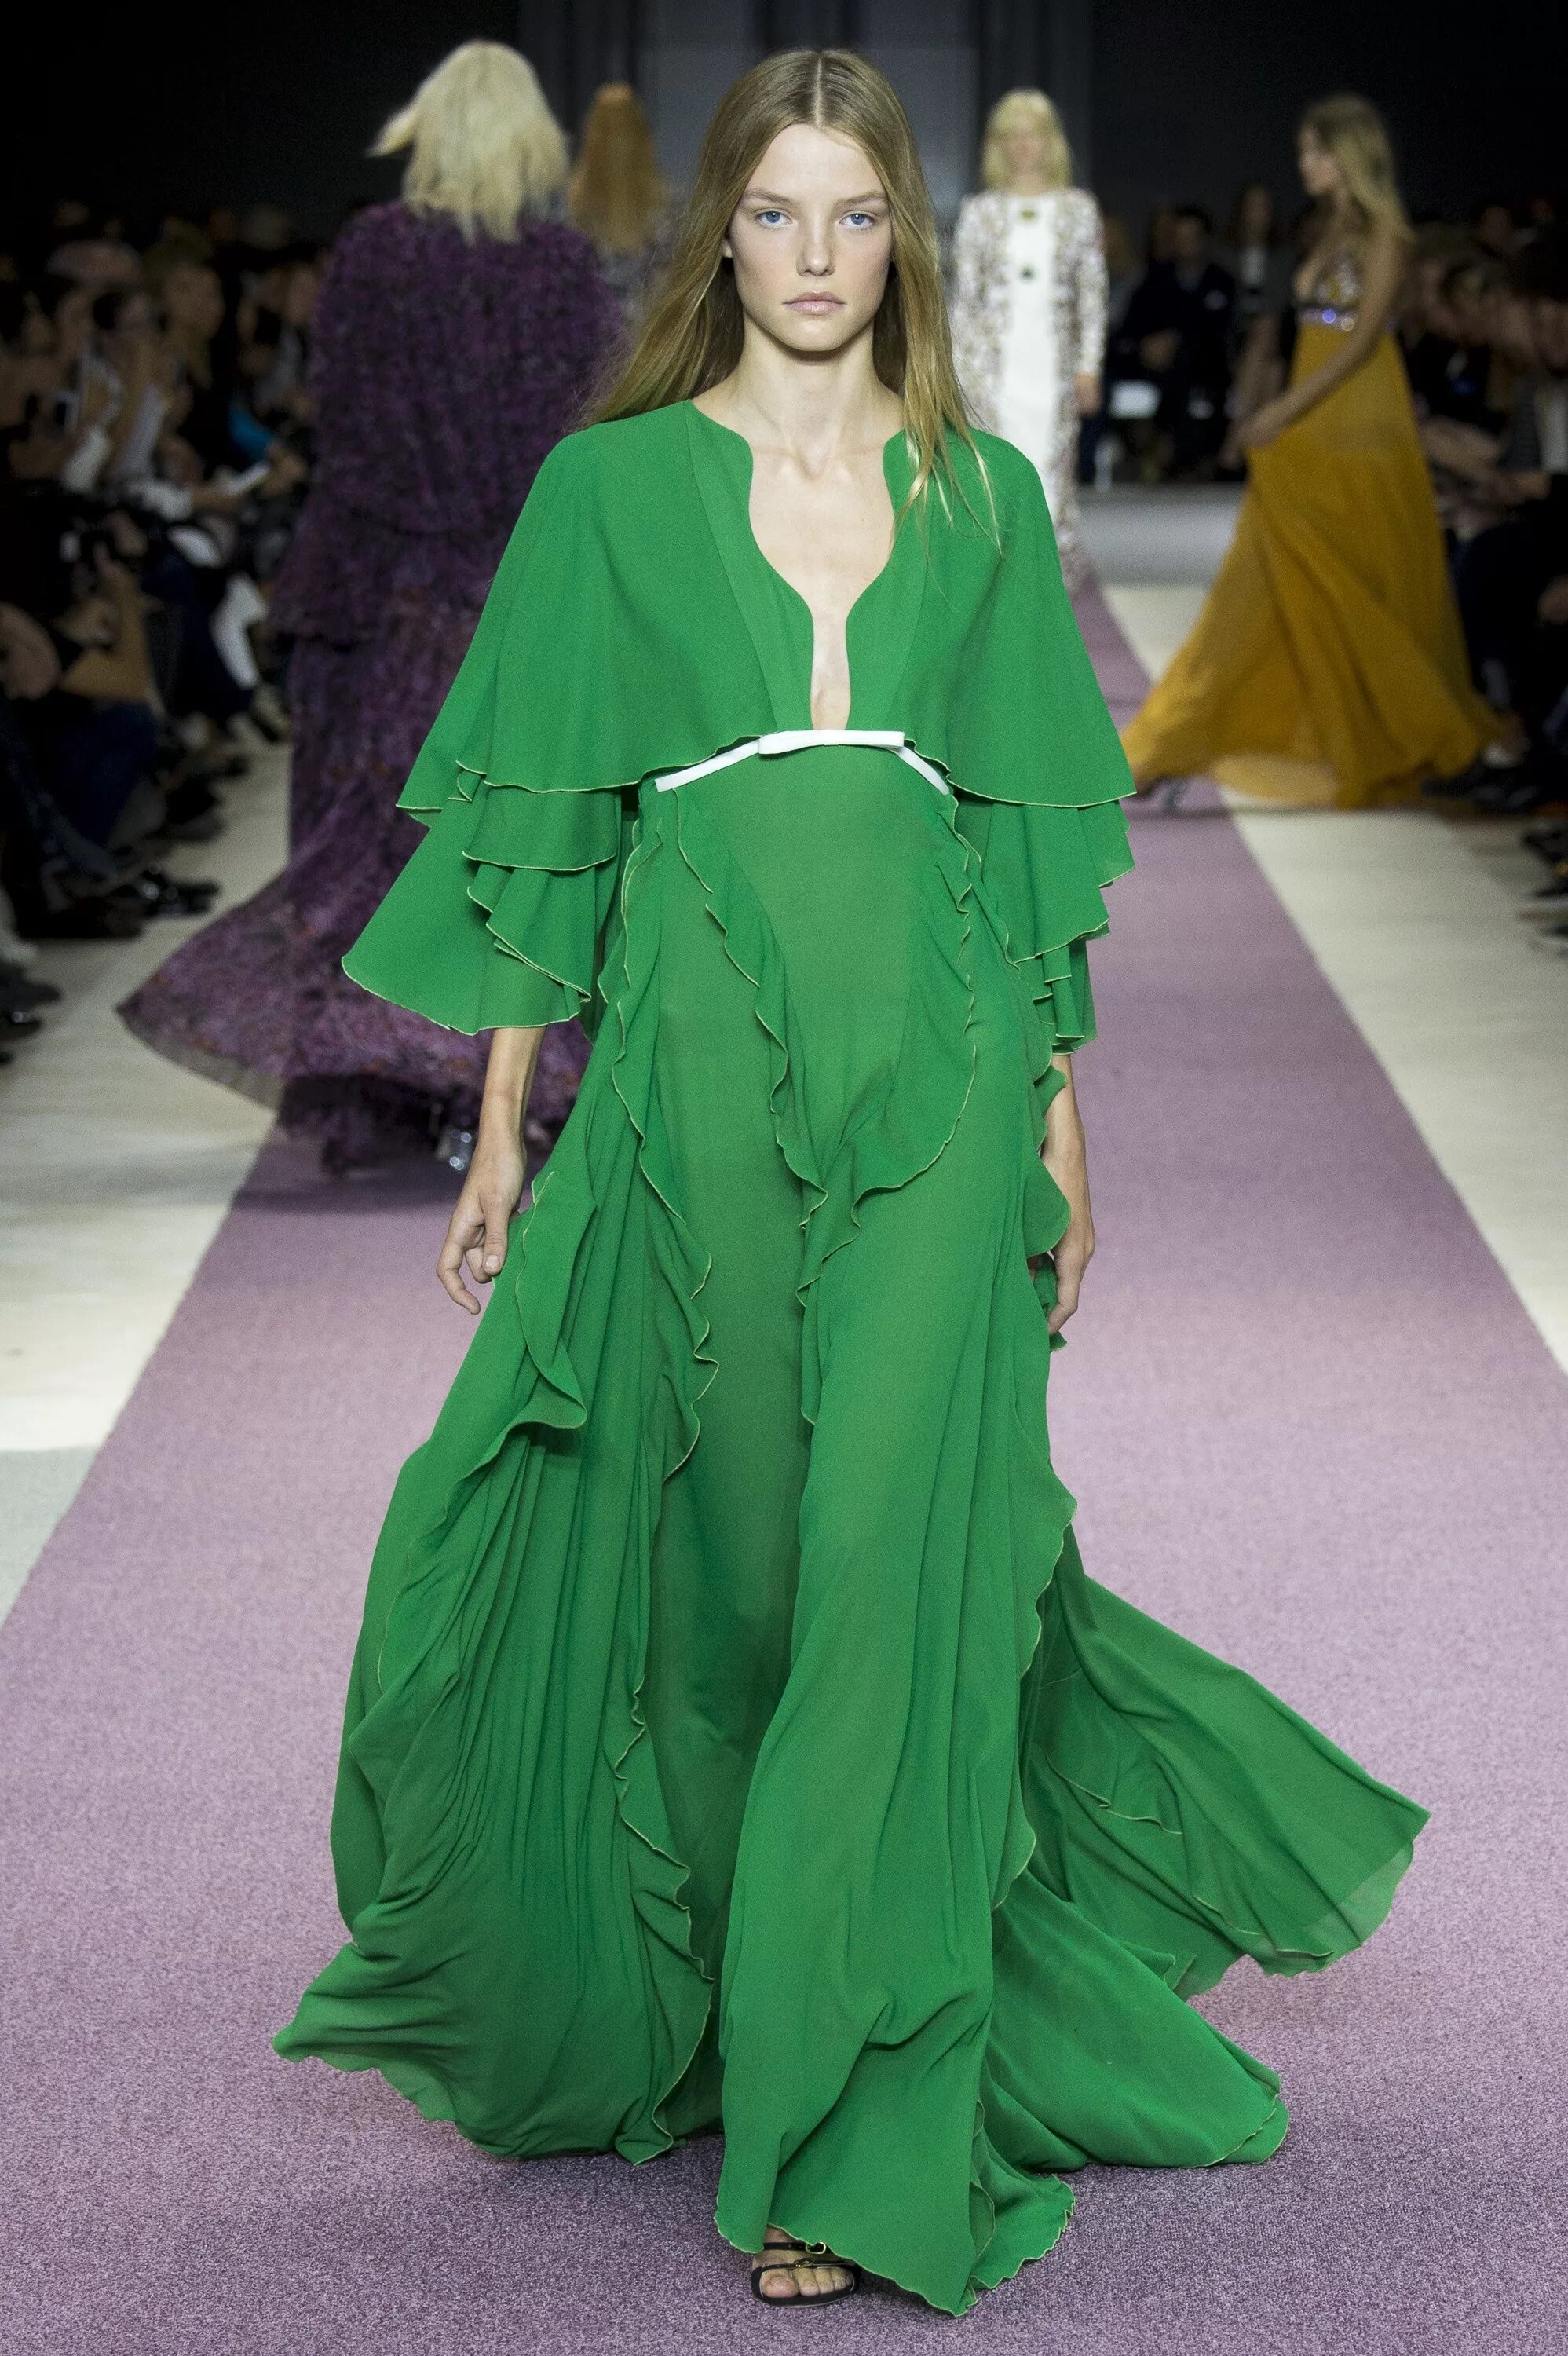 Зеленое платье подиум. Платье зеленого цвета. Зеленый цвет в моде. Платье салатового цвета. Greening mod